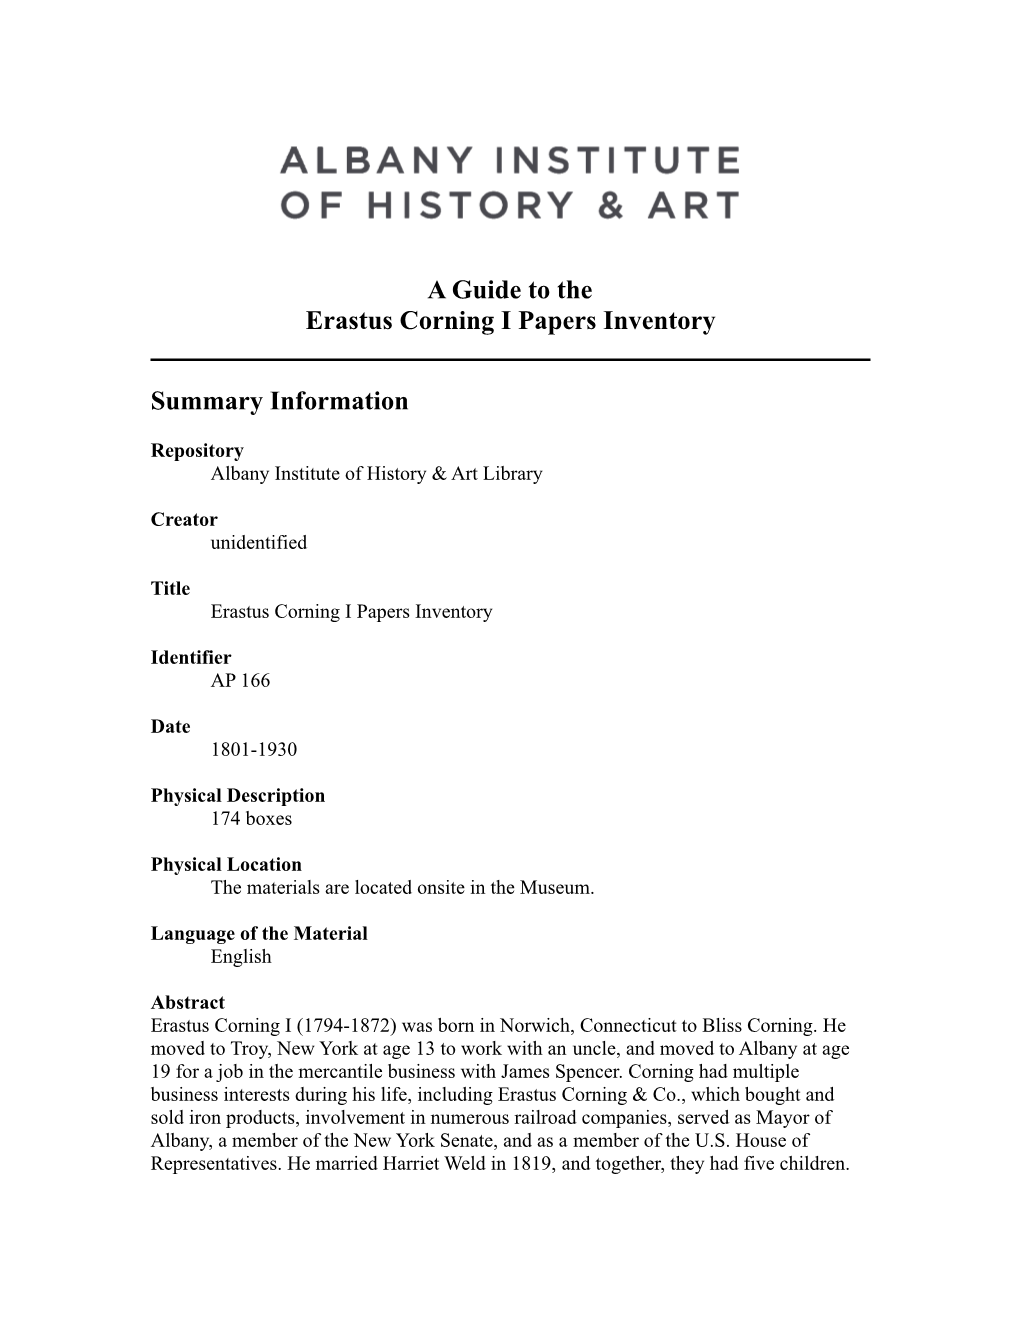 Erastus Corning I Papers Inventory